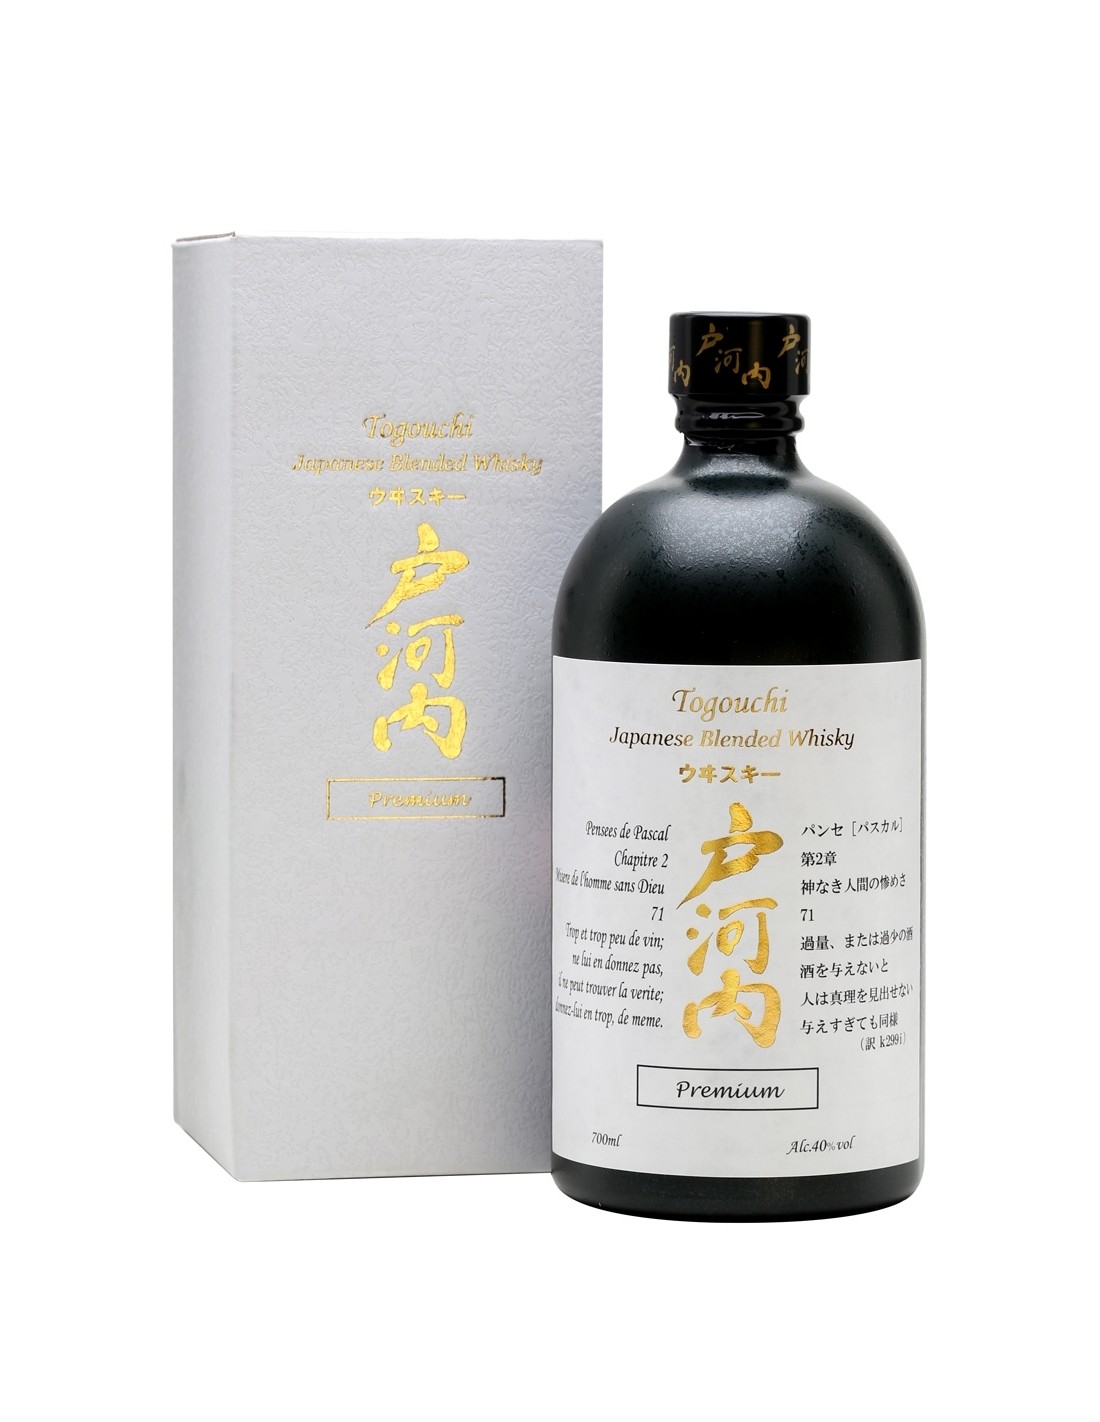 Whisky Togouchi Premium, 0.7L, 40% alc., Japonia alcooldiscount.ro